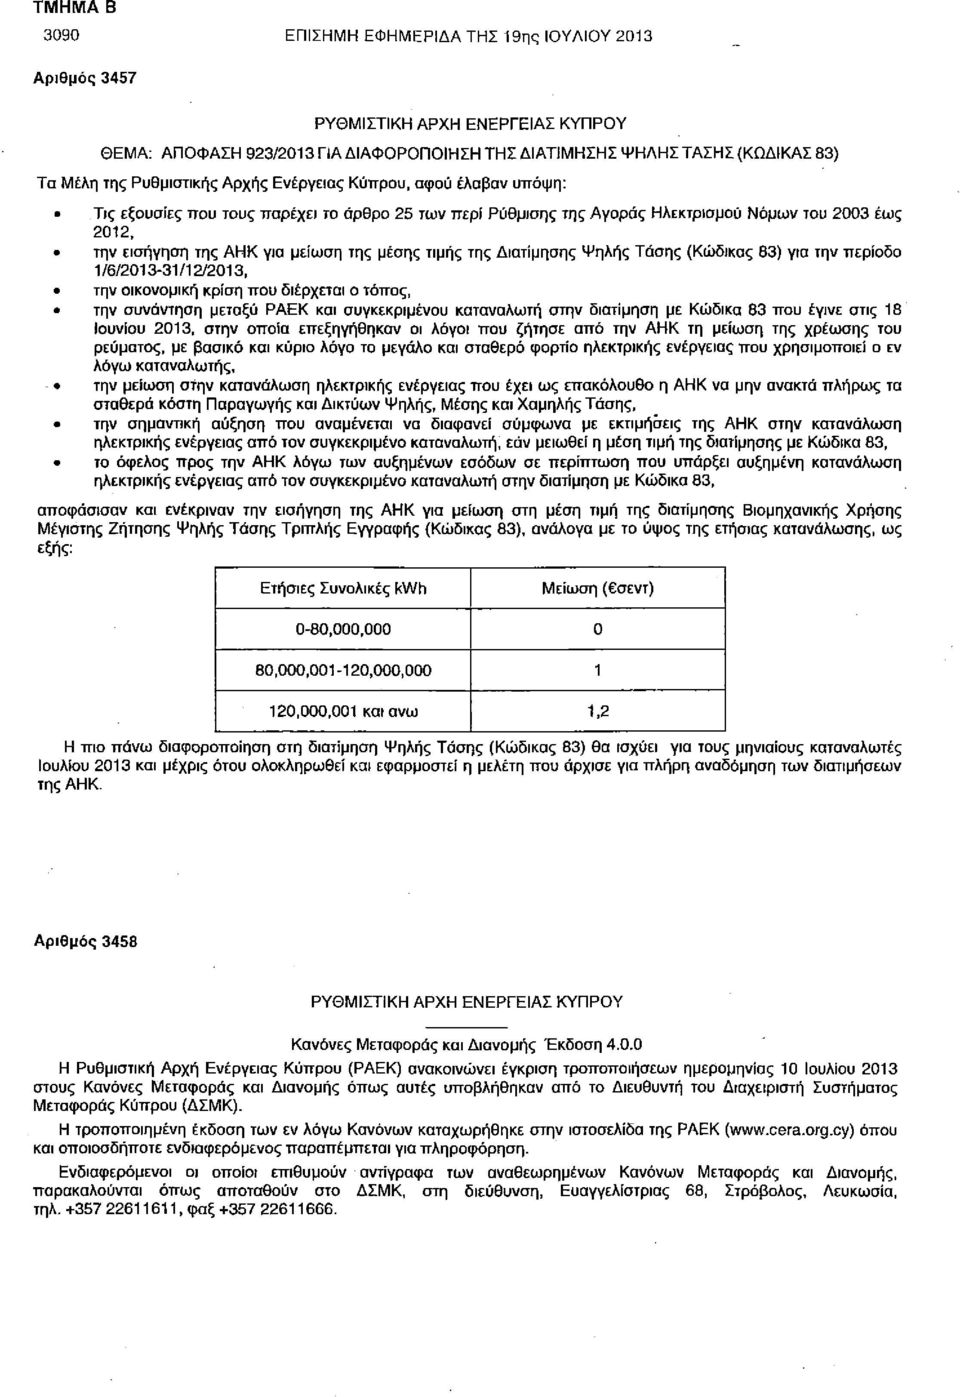 την εισήγηση της ΑΗΚ για μείωση της μέσης τιμής της Διατίμησης Ψηλής Τάσης (Κώδικας 83) για την περίοδο 1/6/2013-31/12/2013, την οικονομική κρίση που διέρχεται ο τόπος, την συνάντηση μεταξύ ΡΑΕΚ και